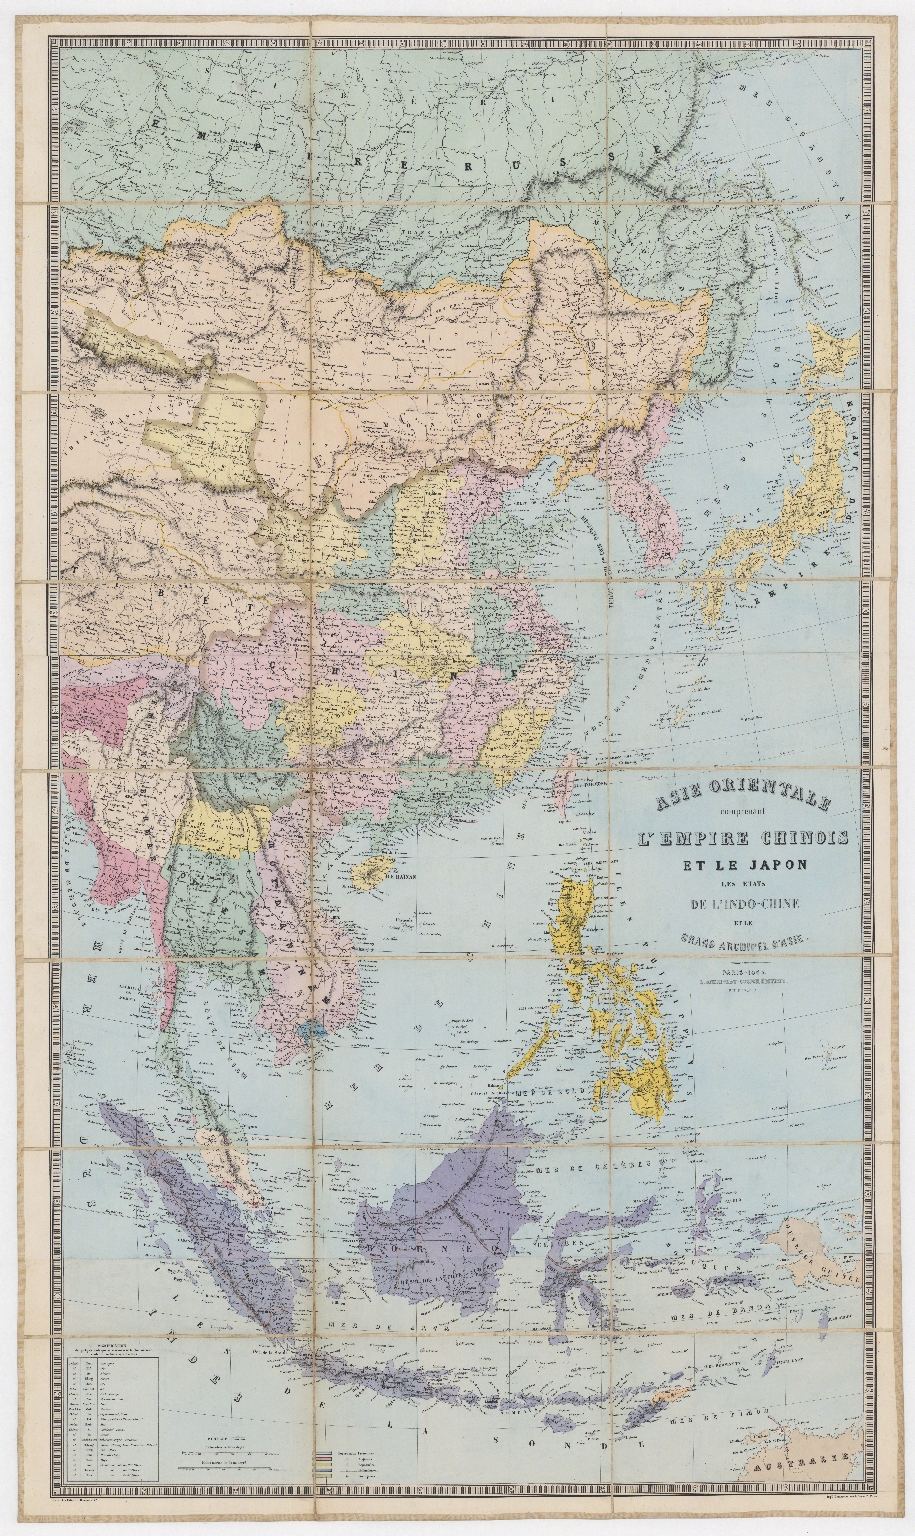 Asie orientale : comprenant l'Empire Chinois et le Japon, les états de l'Indo-Chine et le grand archipel d'Asie